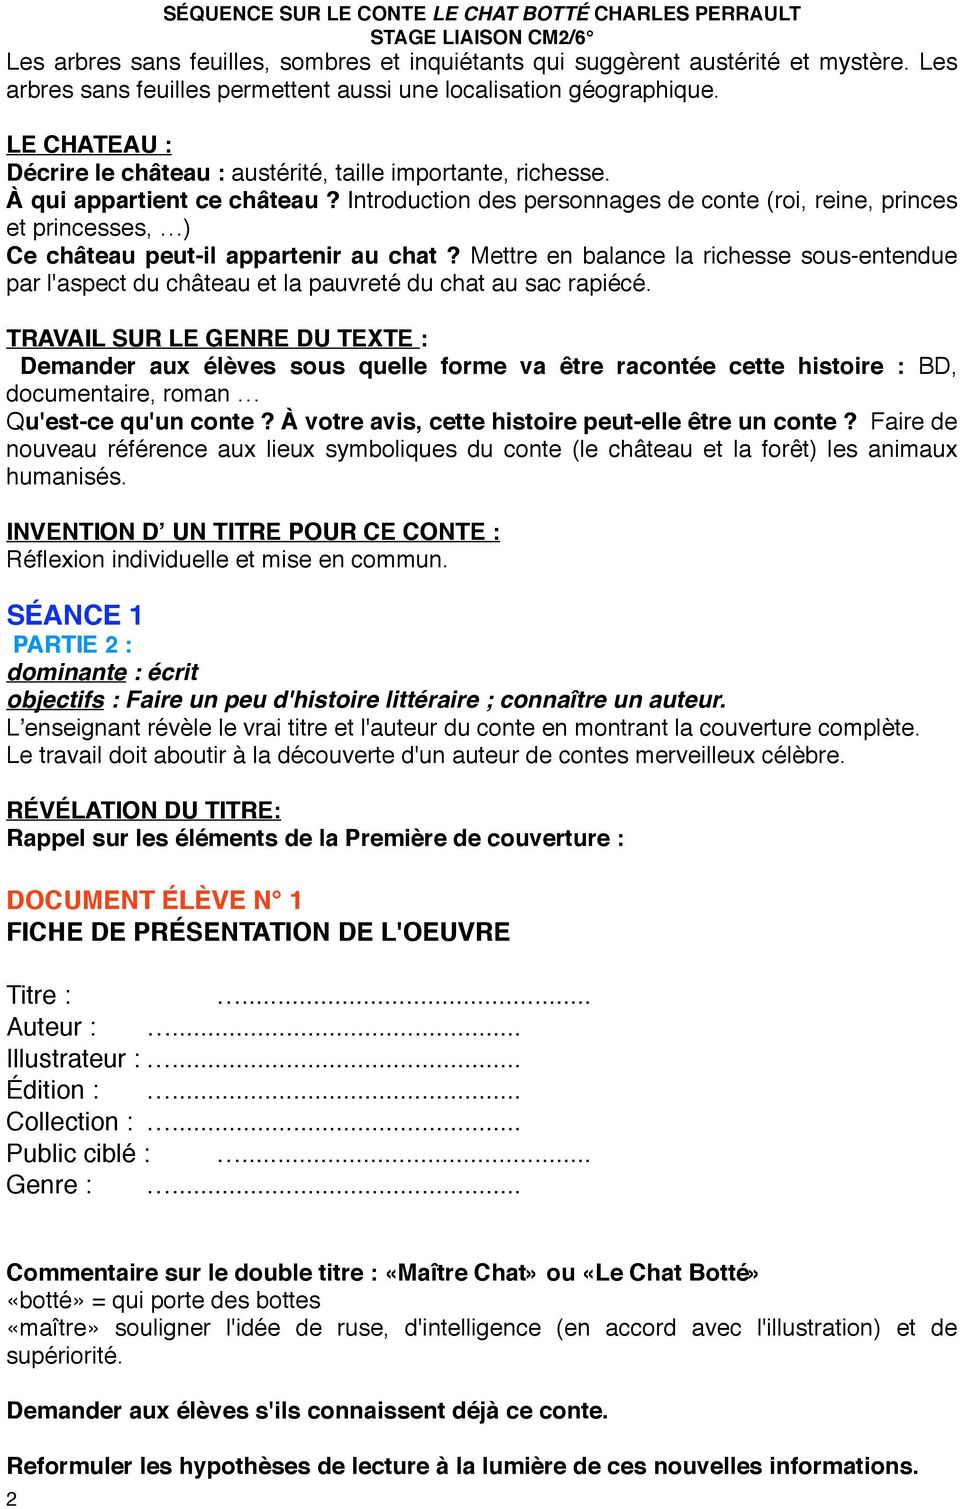 Un Exemple De Sequence Le Conte Merveilleux Le Maitre Chat Ou Le Chat Botte De Charles Perrault Pdf Free Download